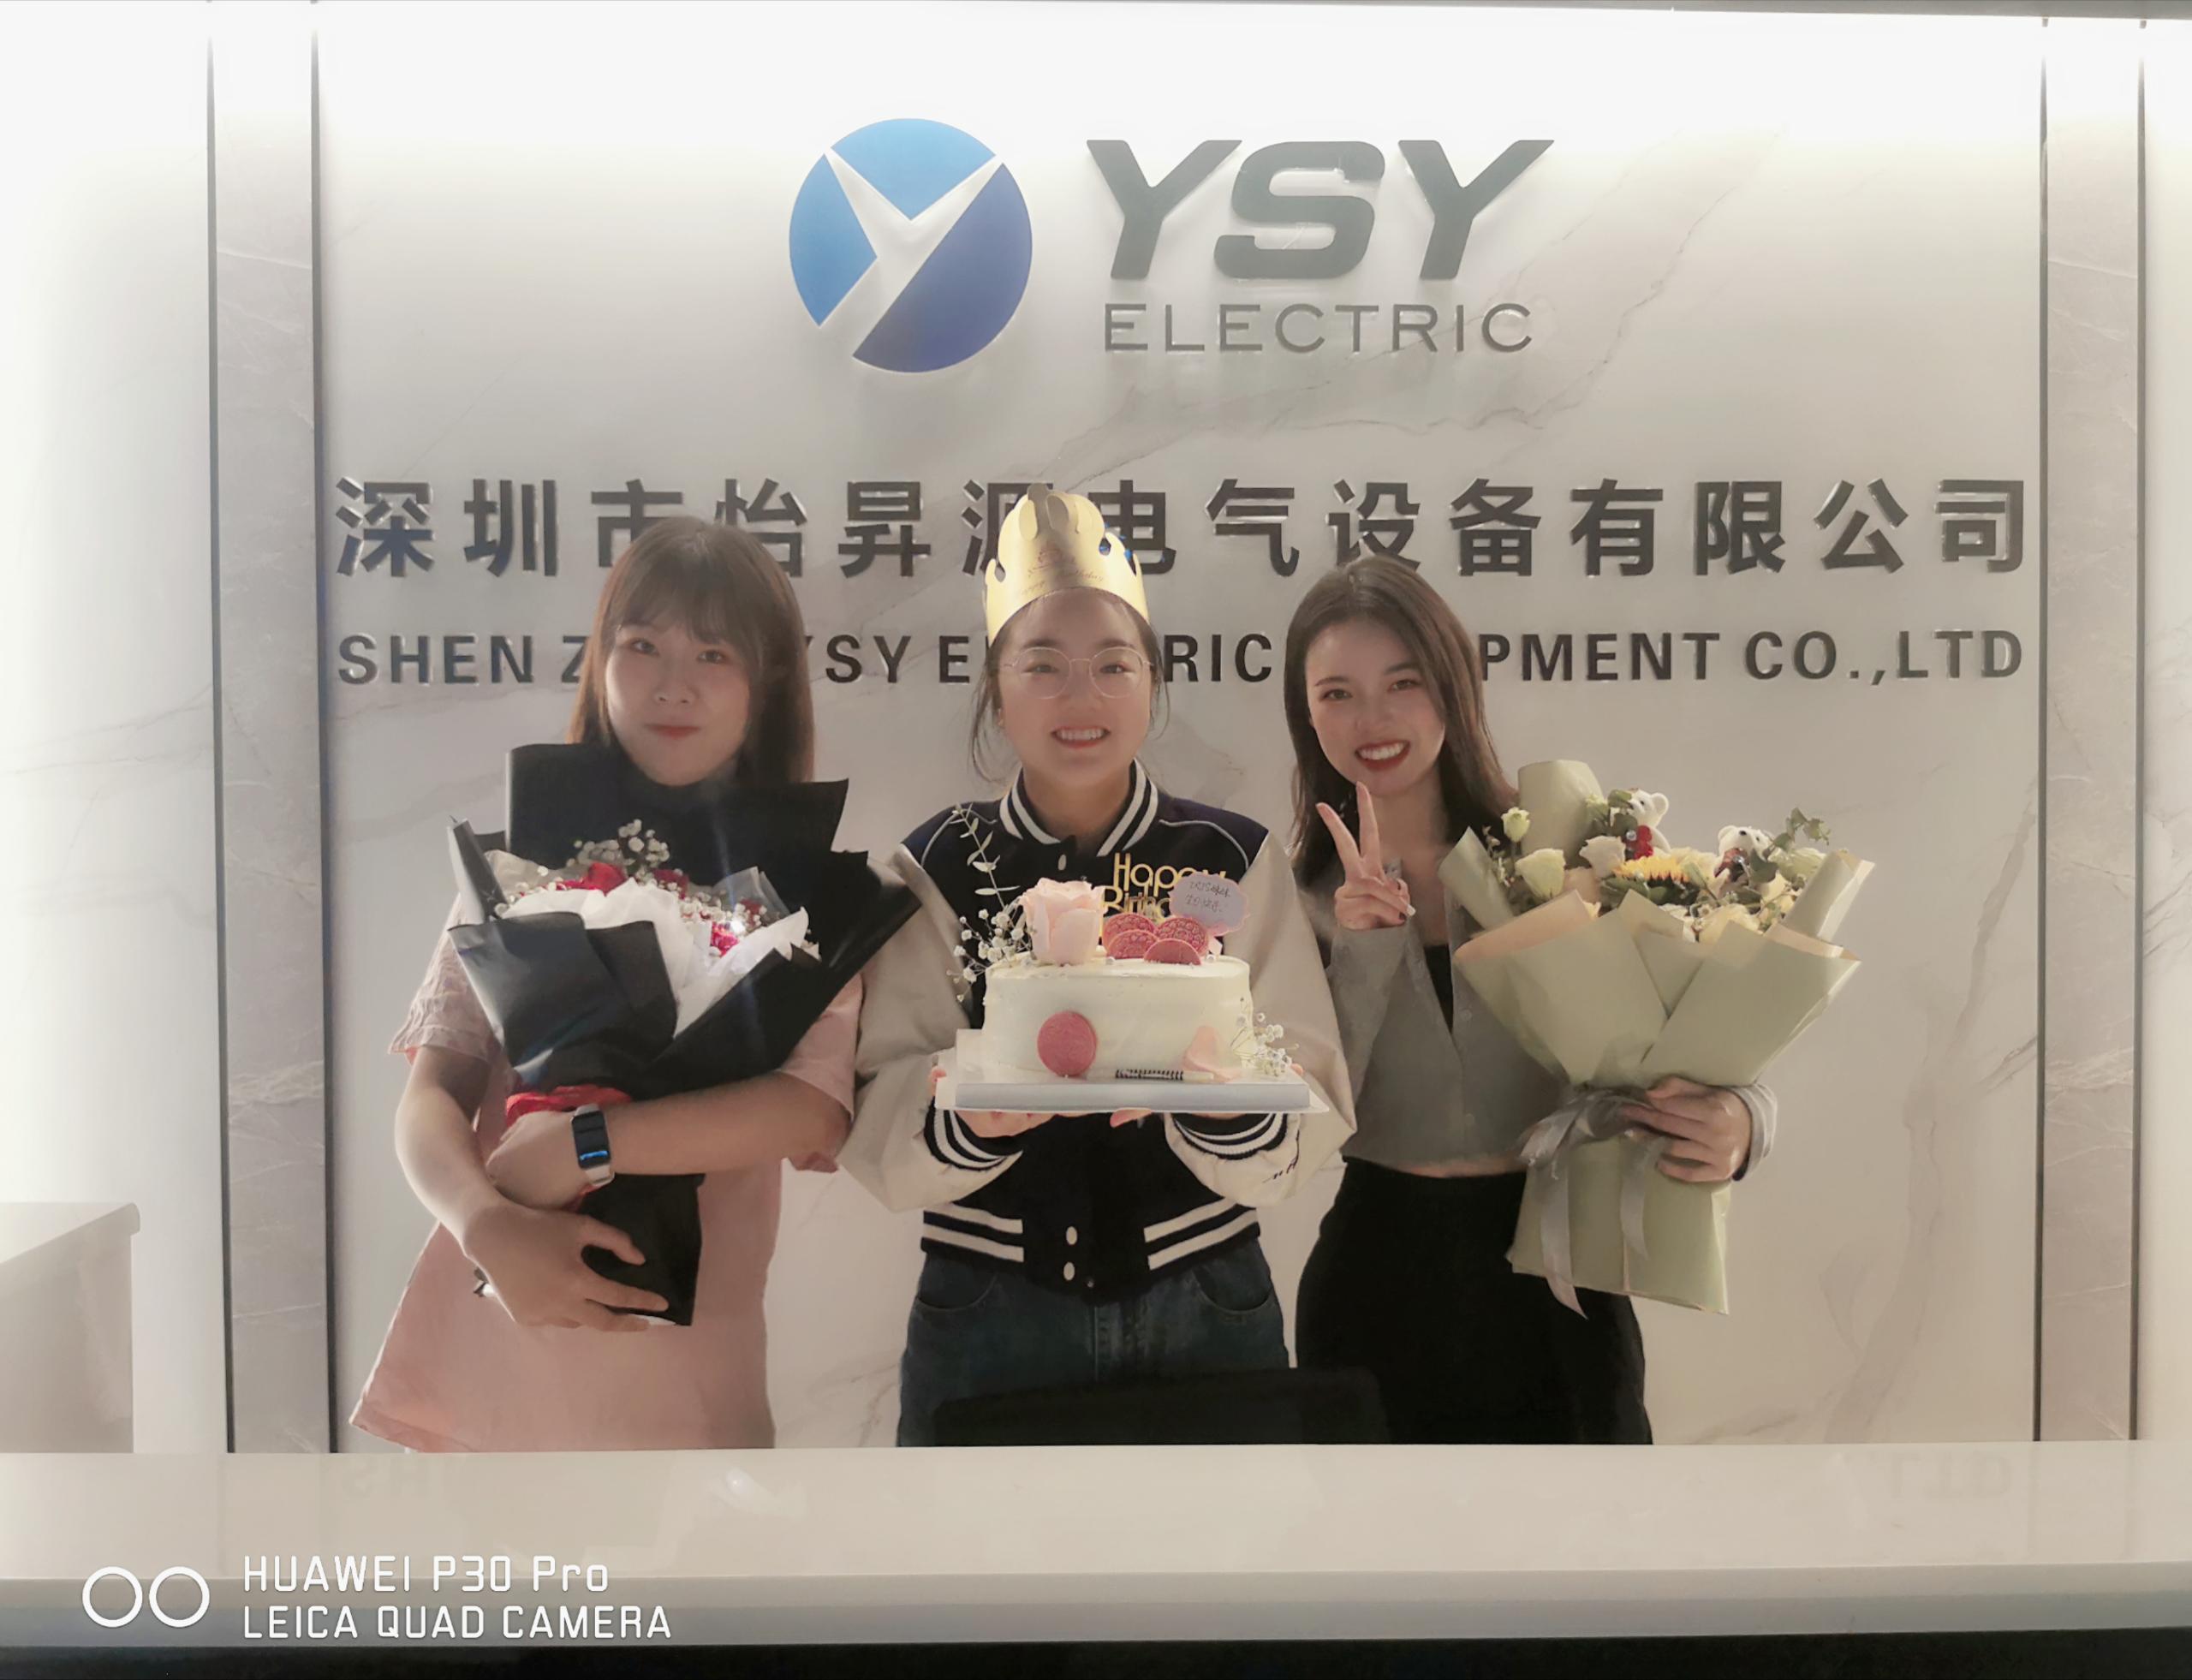 Daudz laimes dzimšanas dienā diviem YSY Electric pārdošanas gadījumiem!